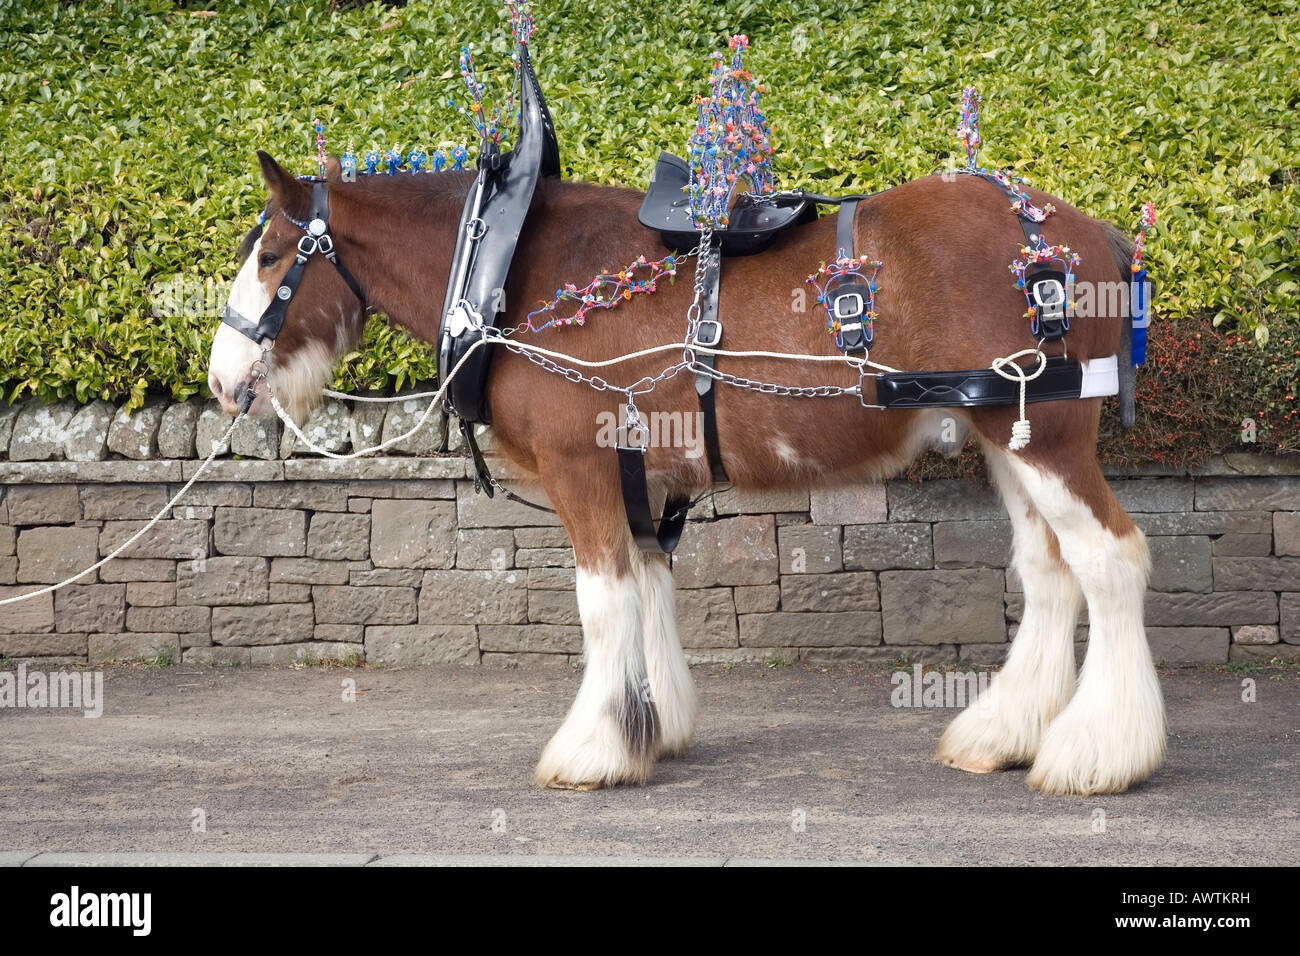 Caballo Clydesdale Lanarkshire, Escocia. Un caballo arnés o tack permite un caballo  para ser conducido o tirar de varios vehículos tirados por caballos tal  como un carro Fotografía de stock - Alamy